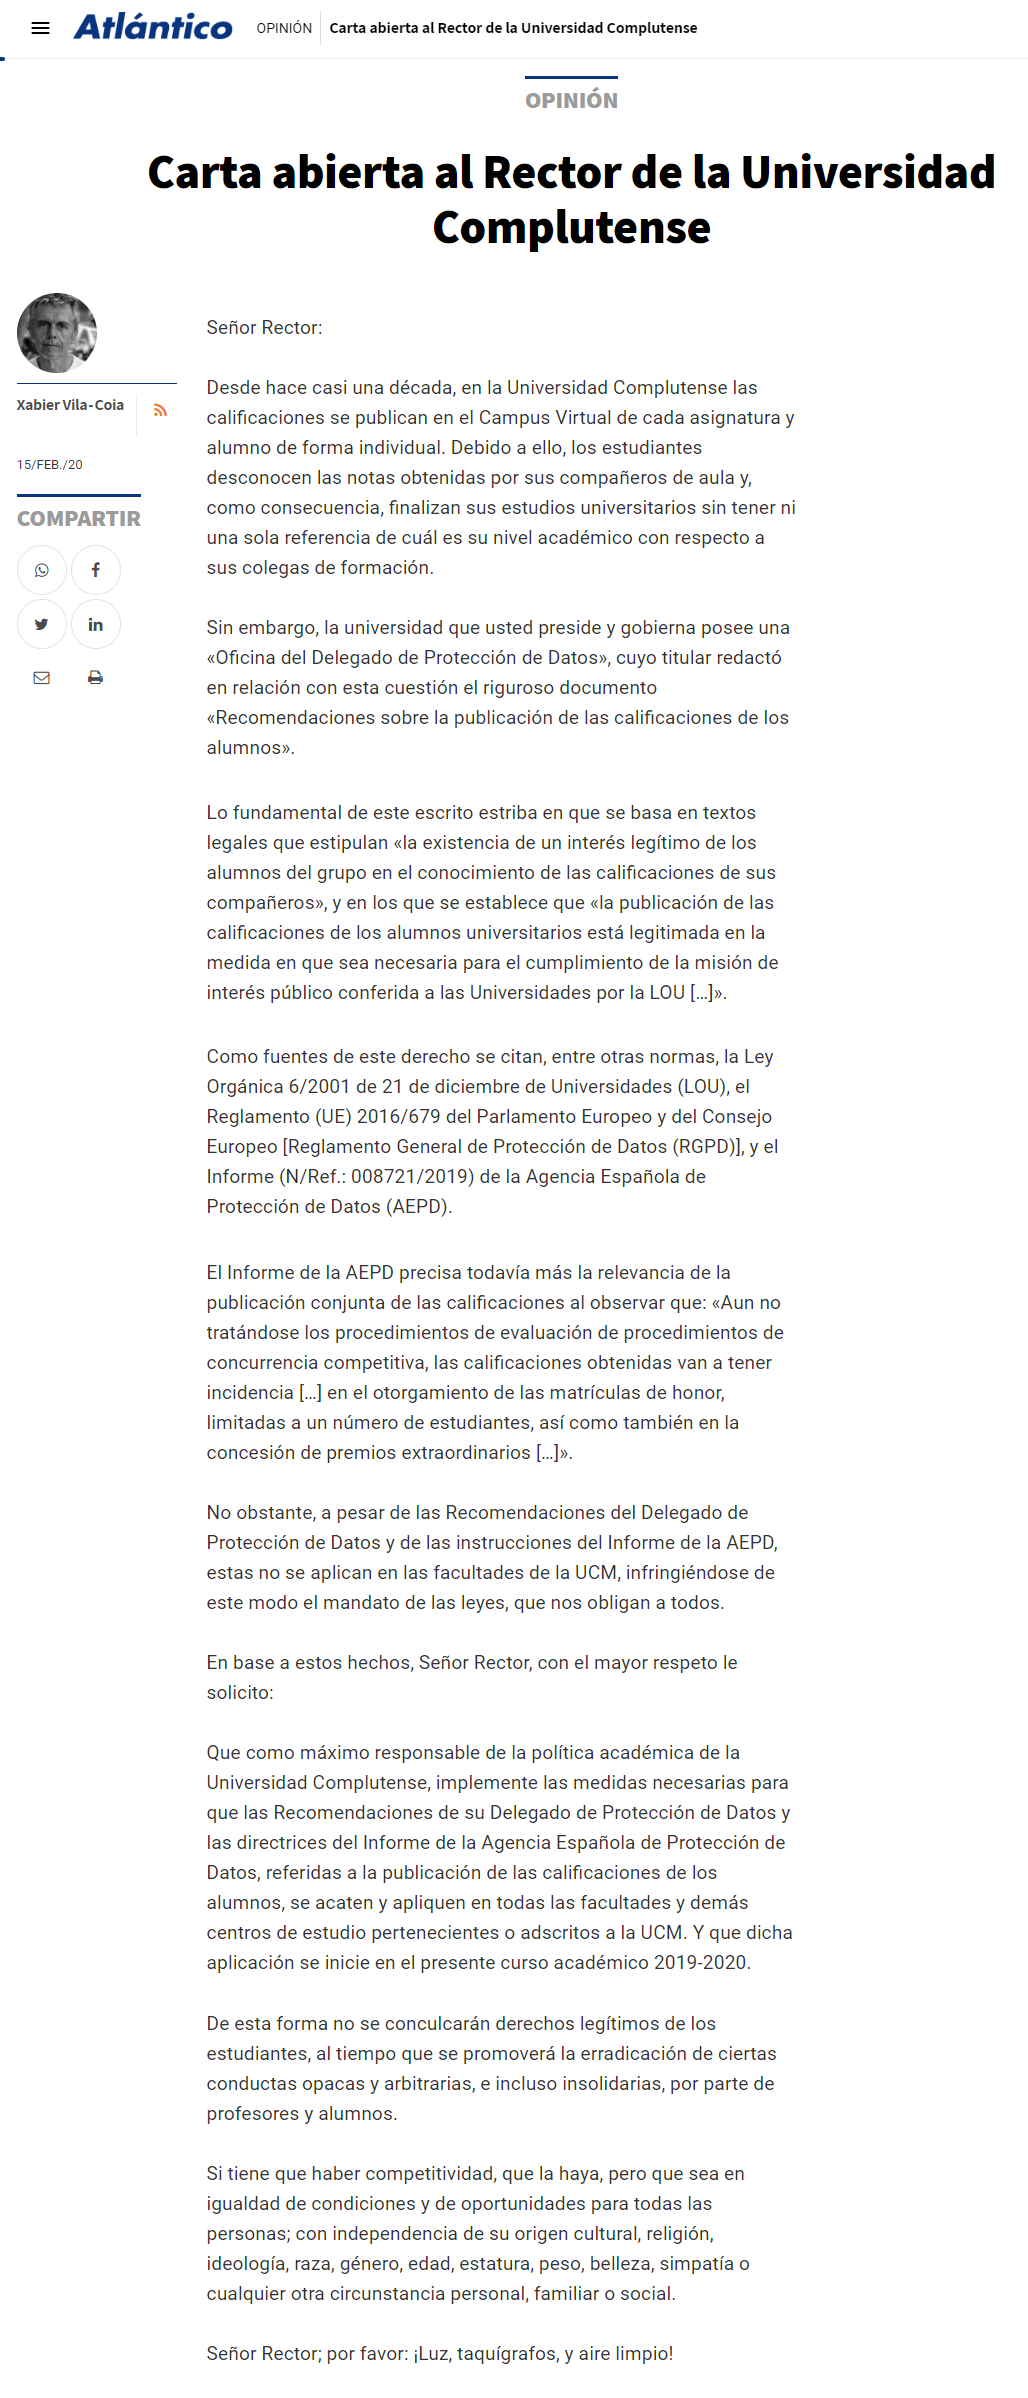 Carta abierta de Xabier Vila-Coia al Rector de la Universidad Complutense de Madrid. Publicada en El Correo Gallego el 16 de febrero de 2020, y en otros diarios.